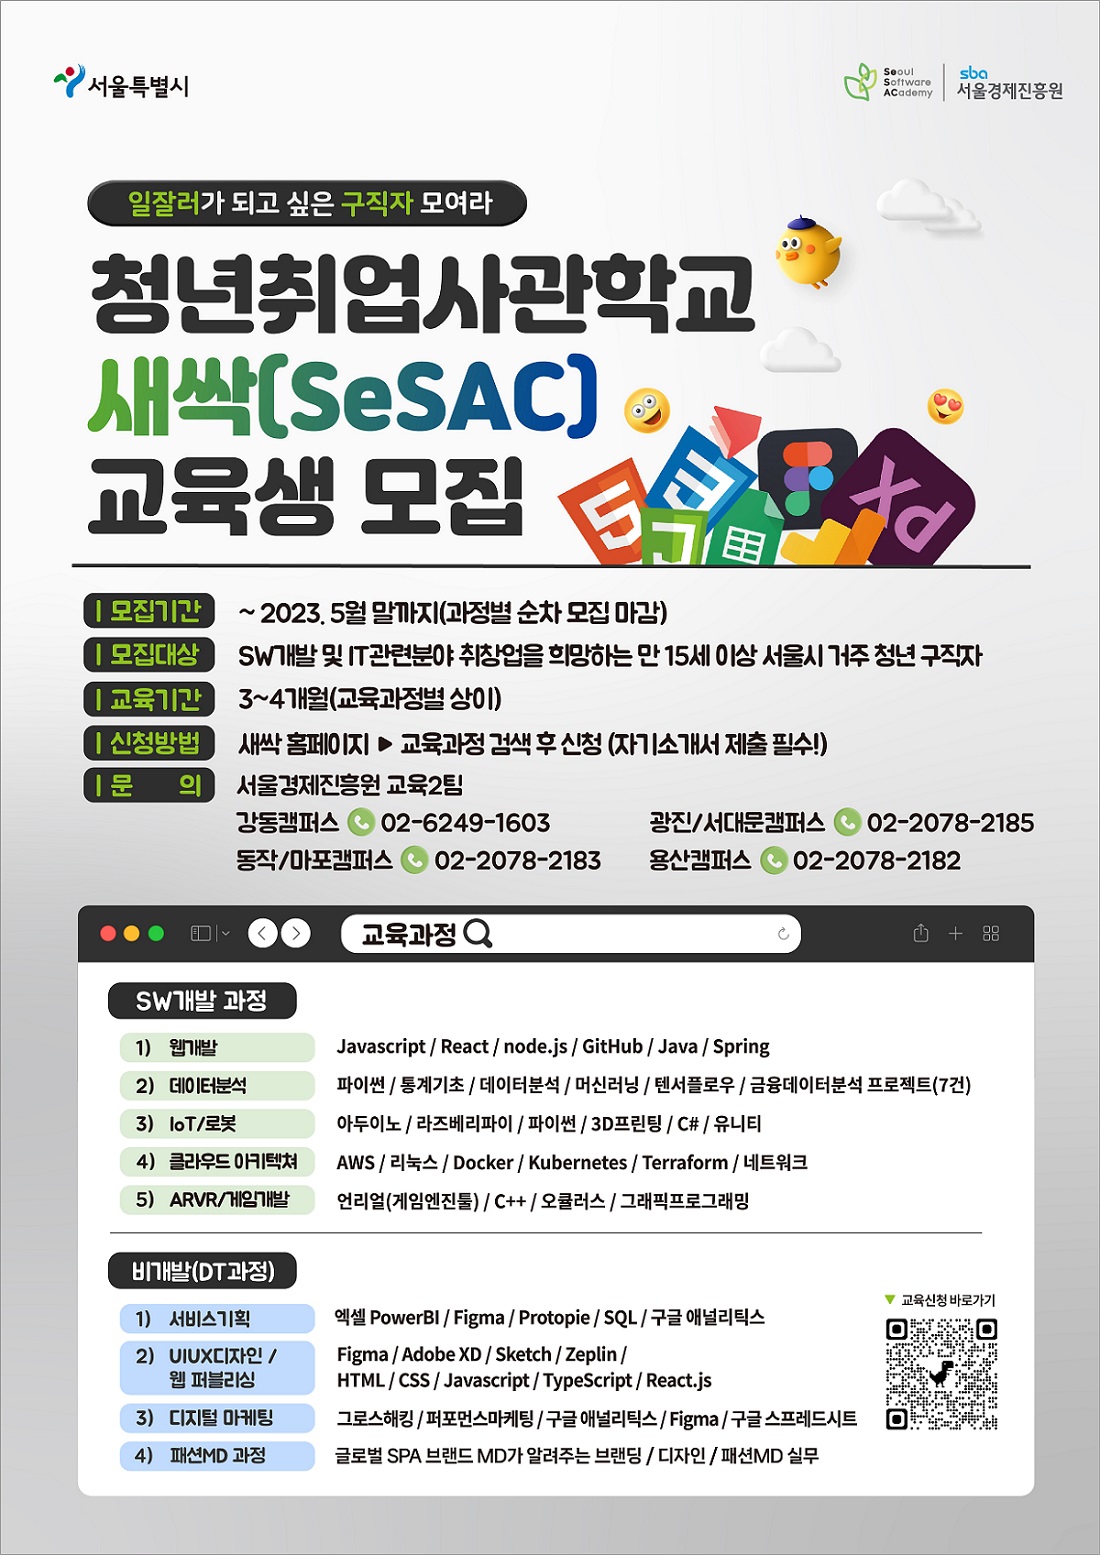 청년취업사관학교 새싹(SeSAC) 교육생 모집 SW개발과정, 비개발(DT과정)